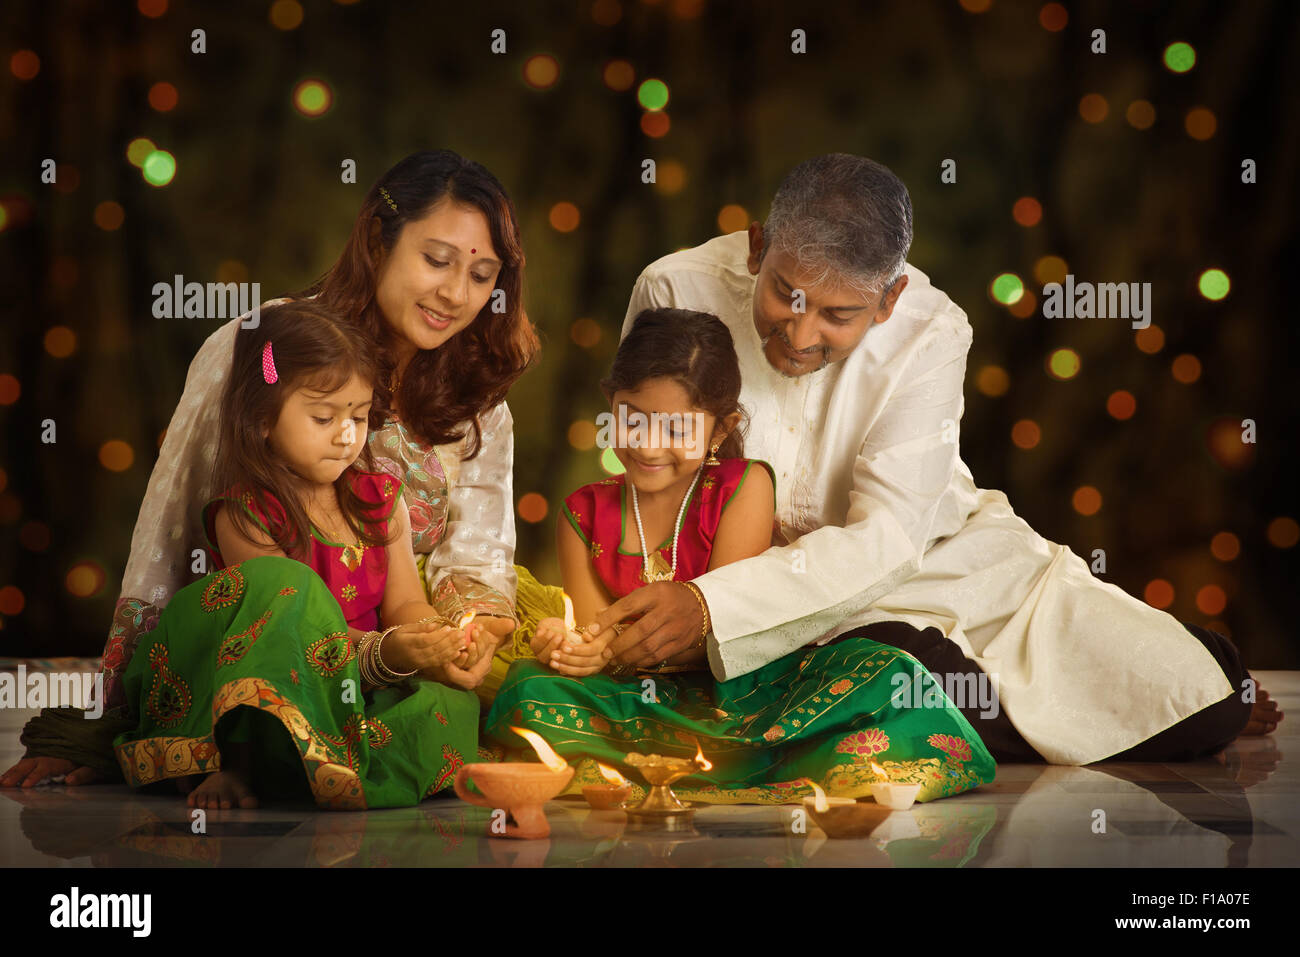 Famiglia indiana nel tradizionale sari illuminazione lampada a olio e celebrare il Diwali o deepavali, fesitval di luci a casa. Bambina Foto Stock